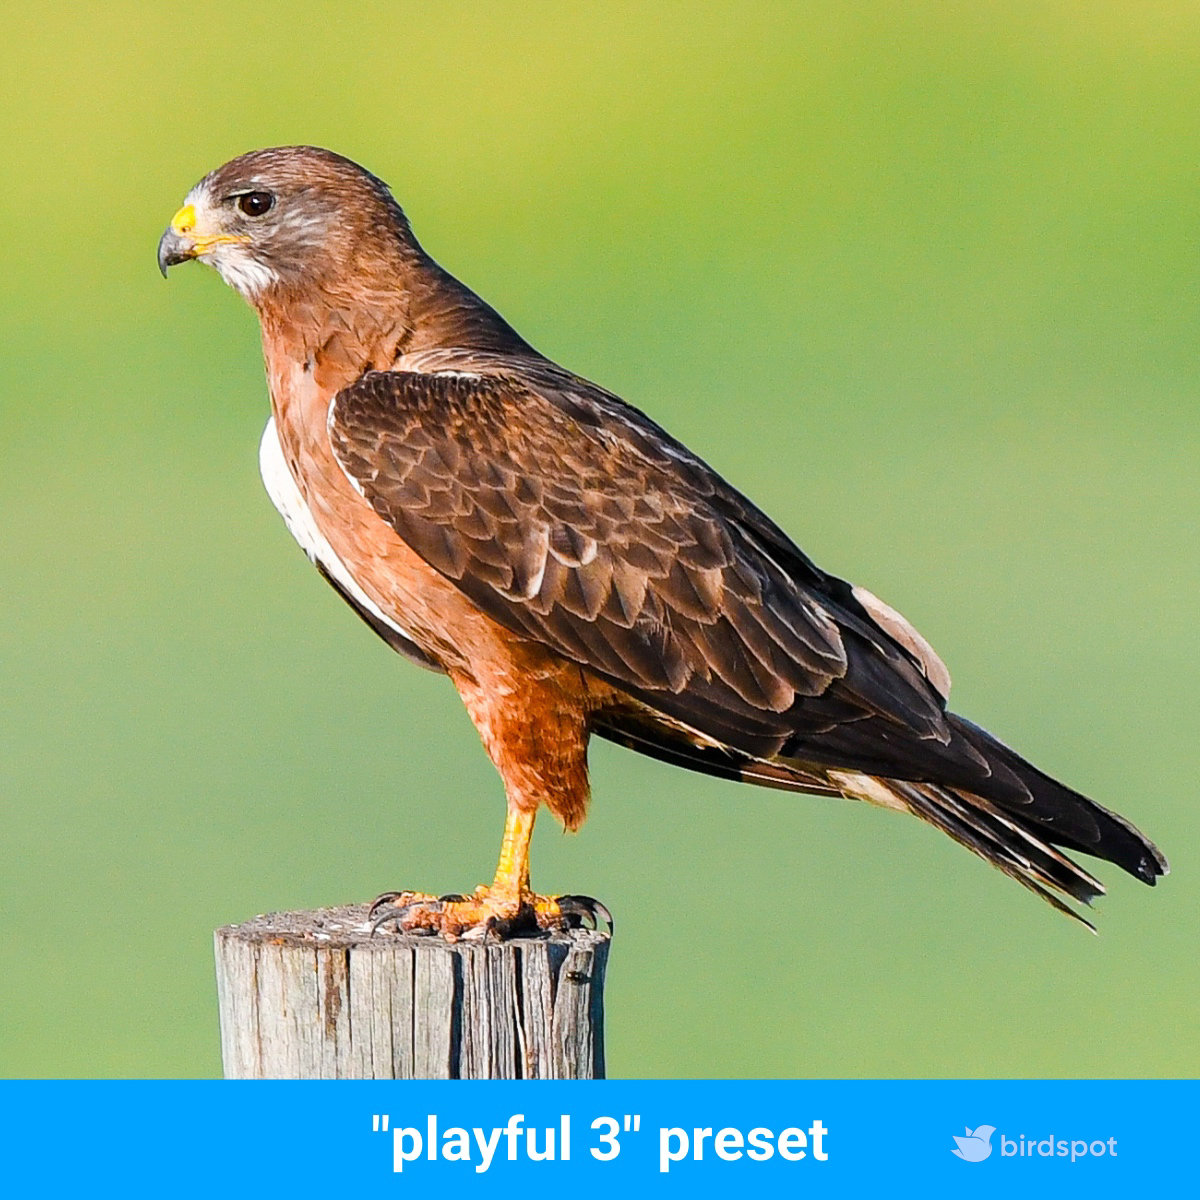 One-click edit using the 'playful 3' birdpack™ preset. Improve your bird photos today with birdpack™ by birdspot.com

#bird #birds #birding #nature #ilikebirds #birdspot #birdpack #hellobirdspot